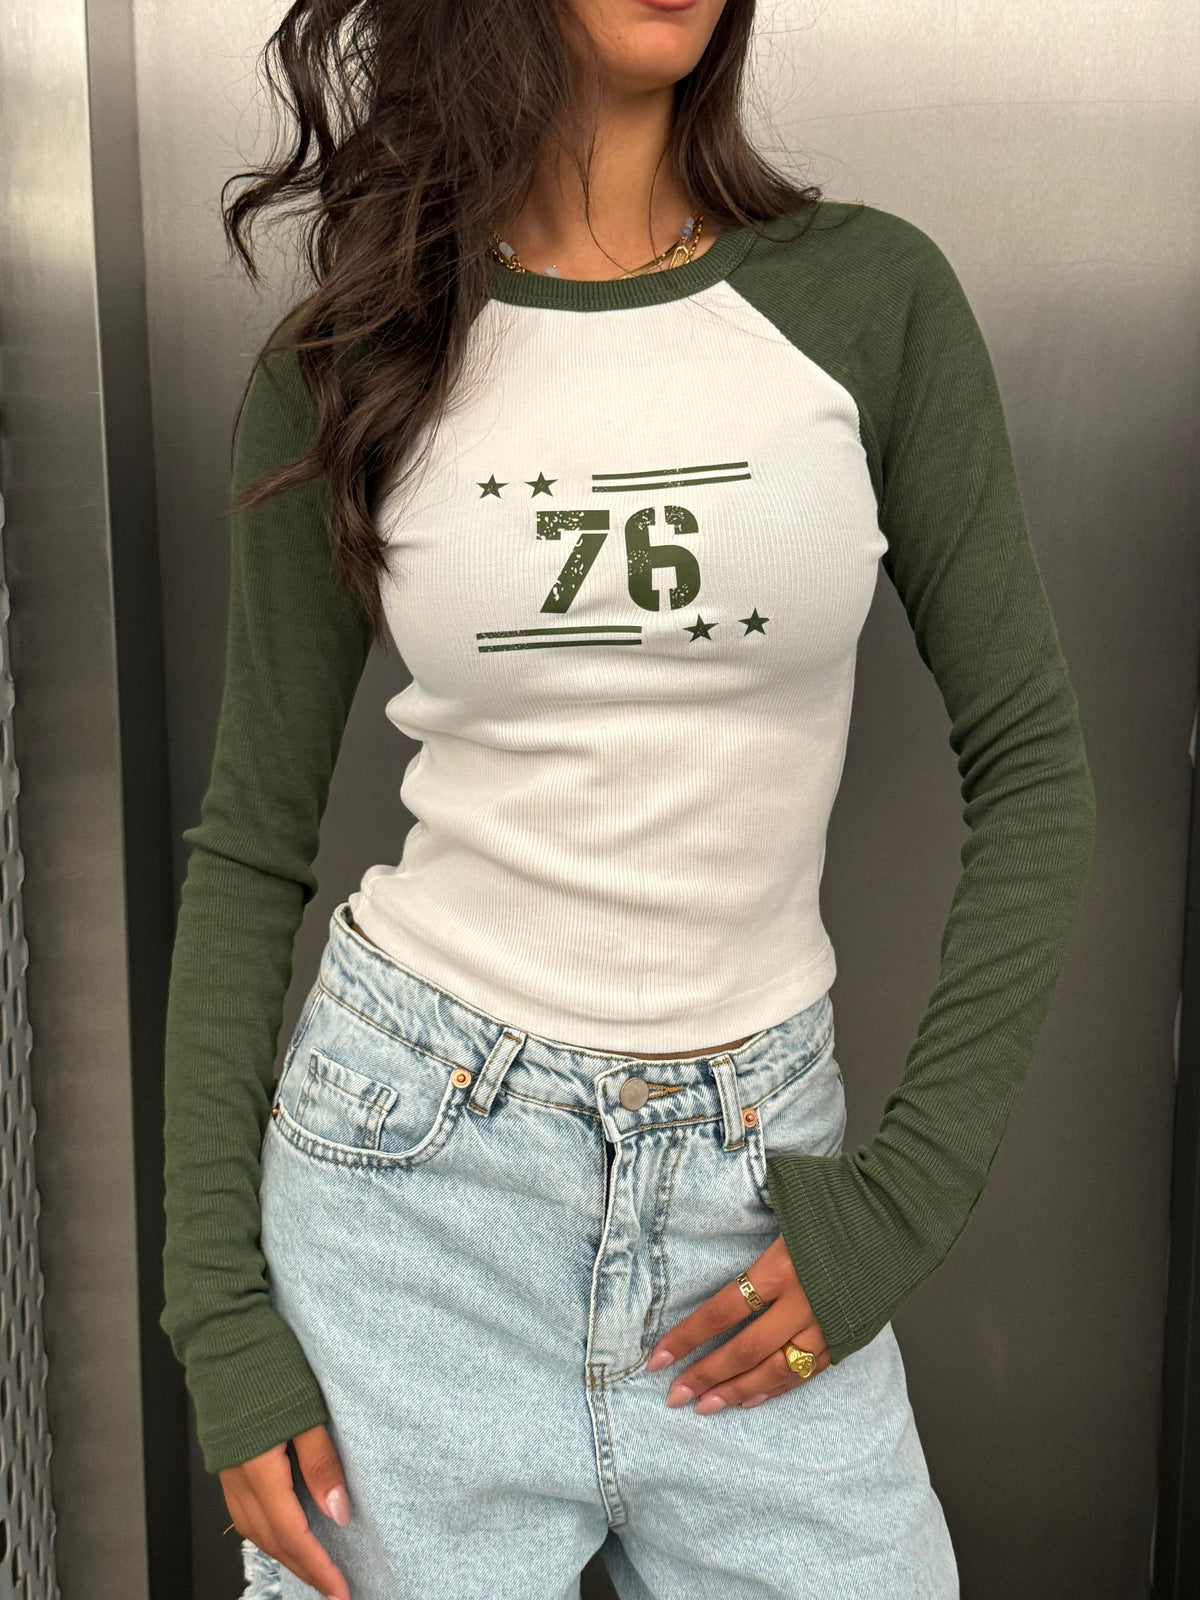 “76” Printed Long Sleeves Top